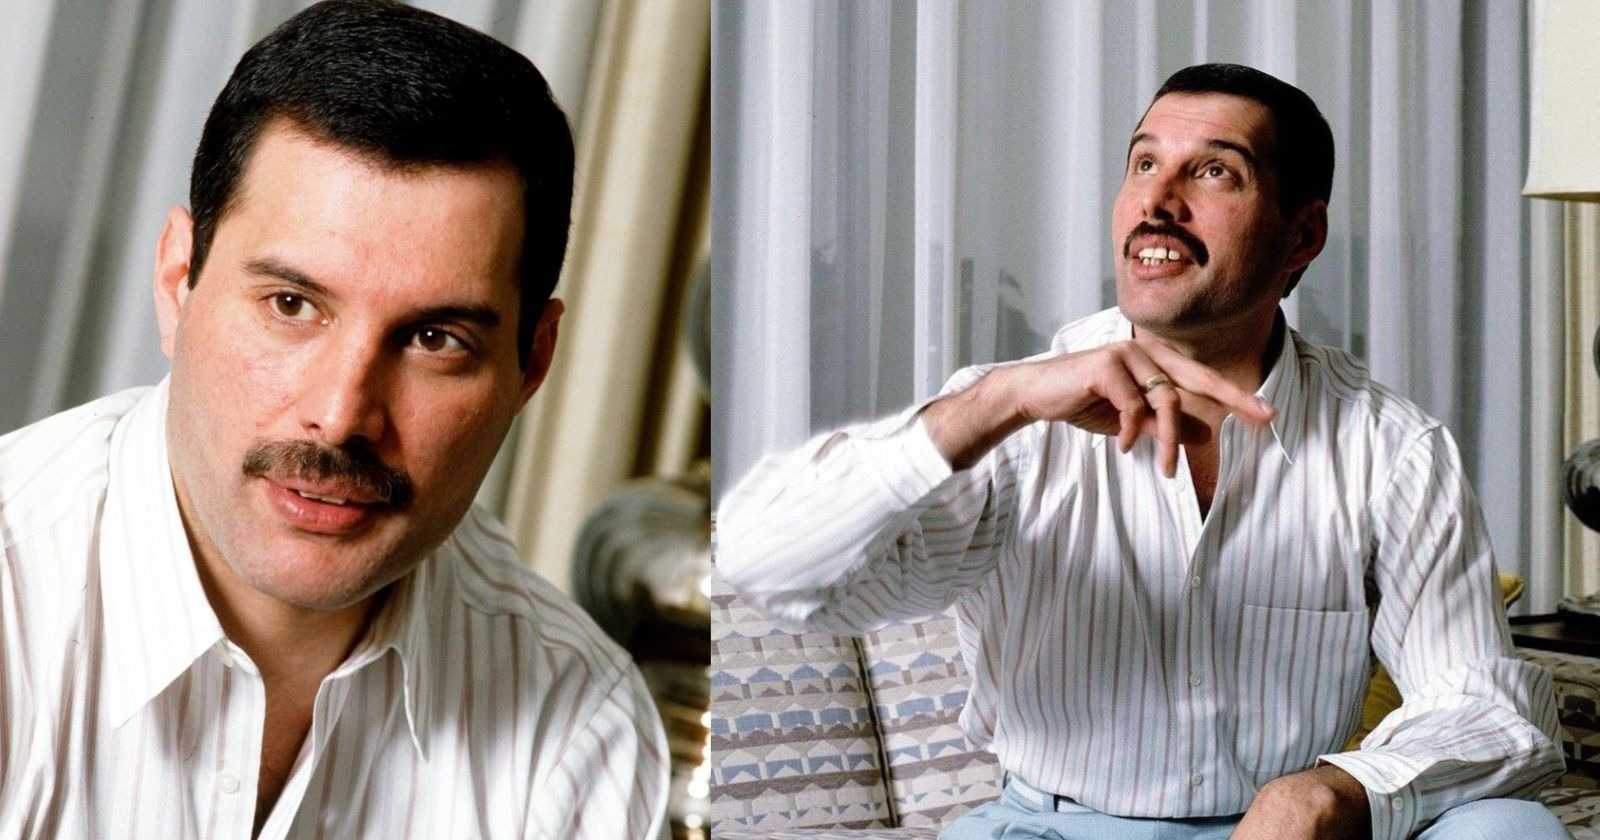 Freddie Mercury quotes